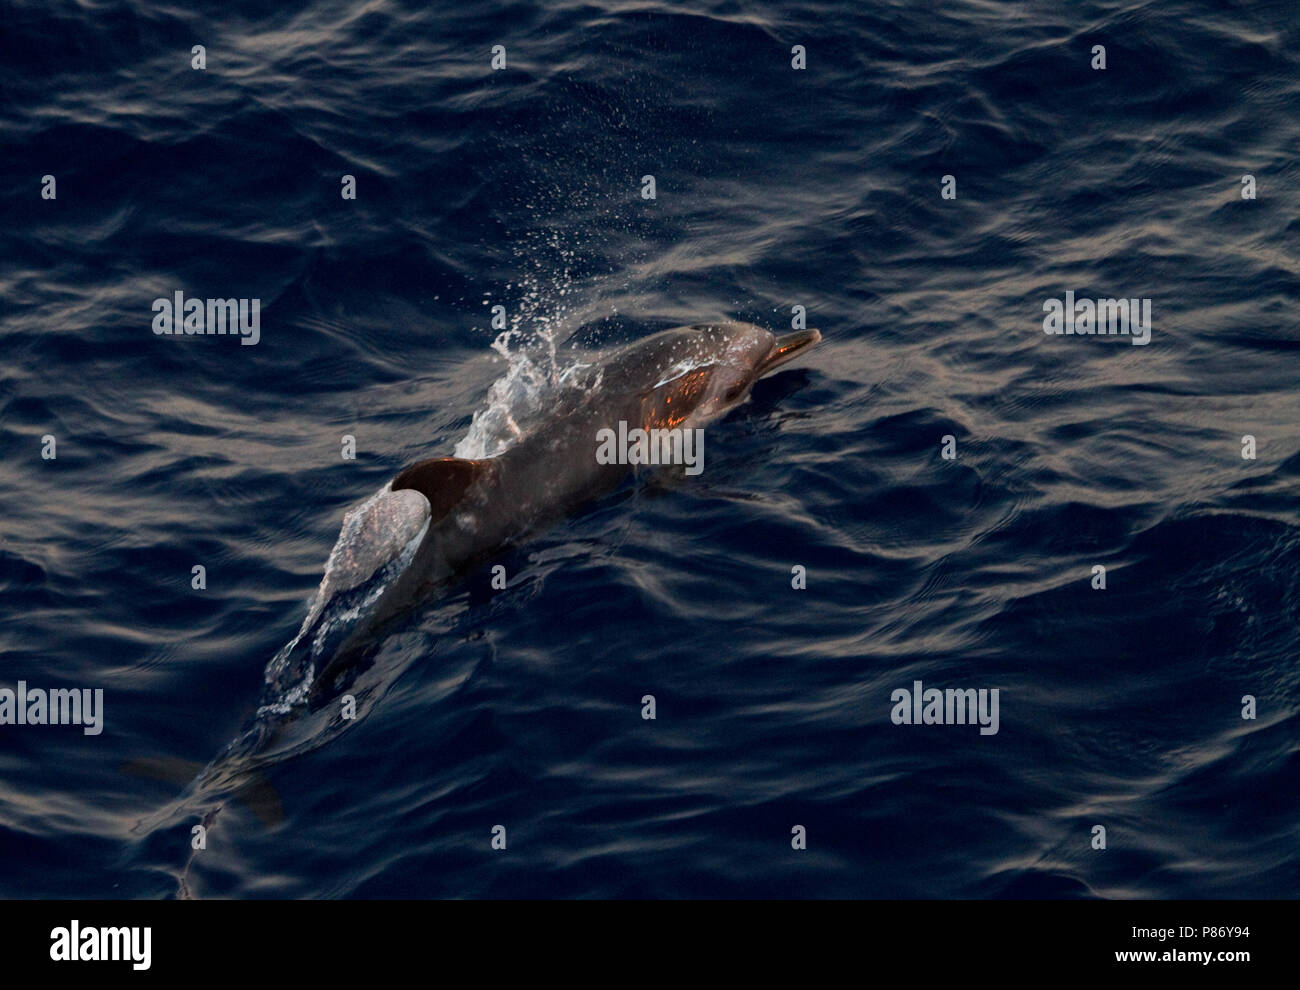 Pantropische gevlekte dolfijn, Dauphins tachetés pantropicaux Banque D'Images